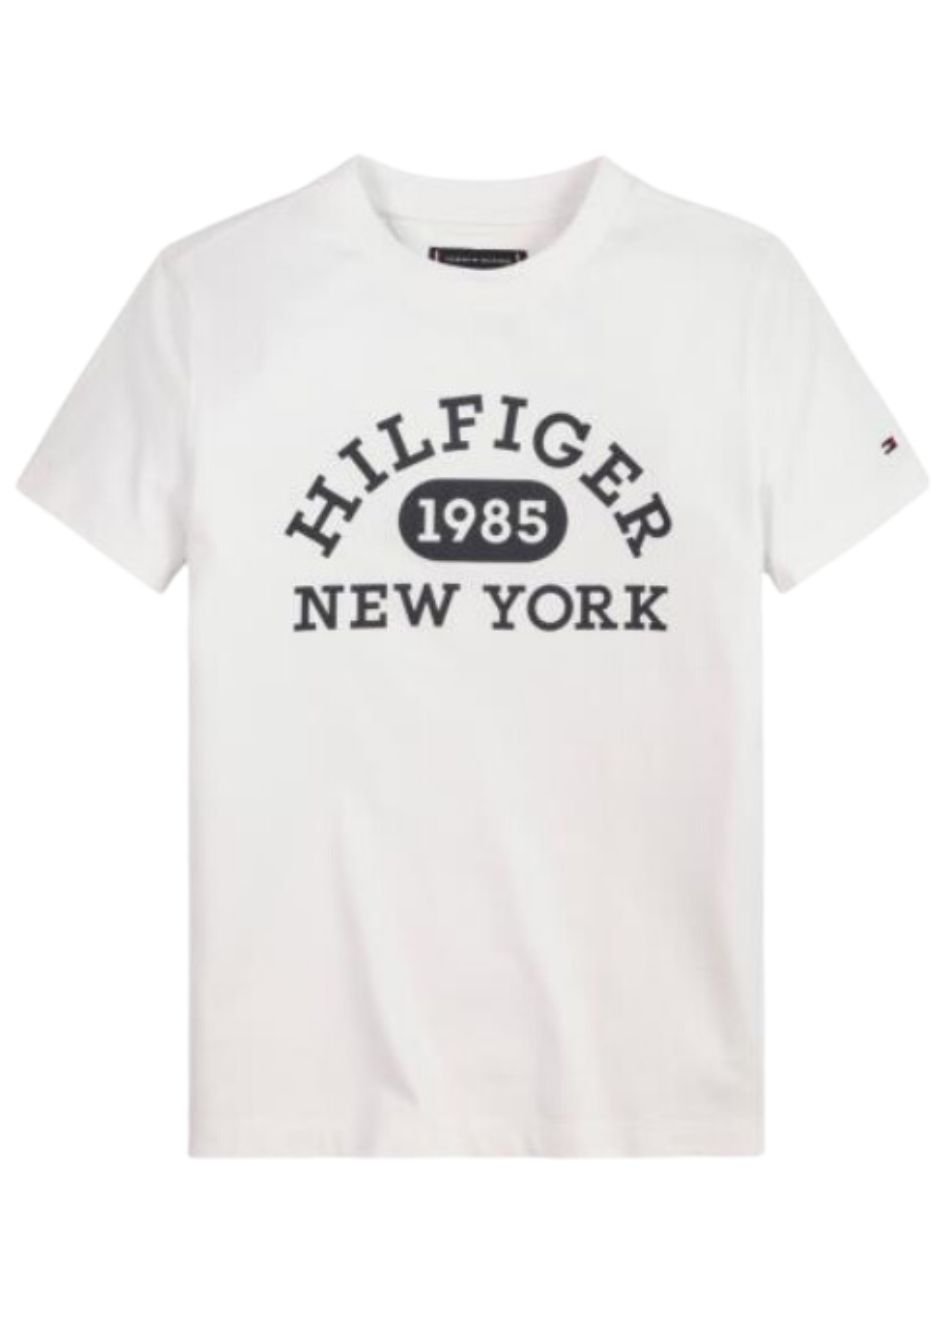 Camiseta Tommy Hilfiger Infantil Branca Logo1985